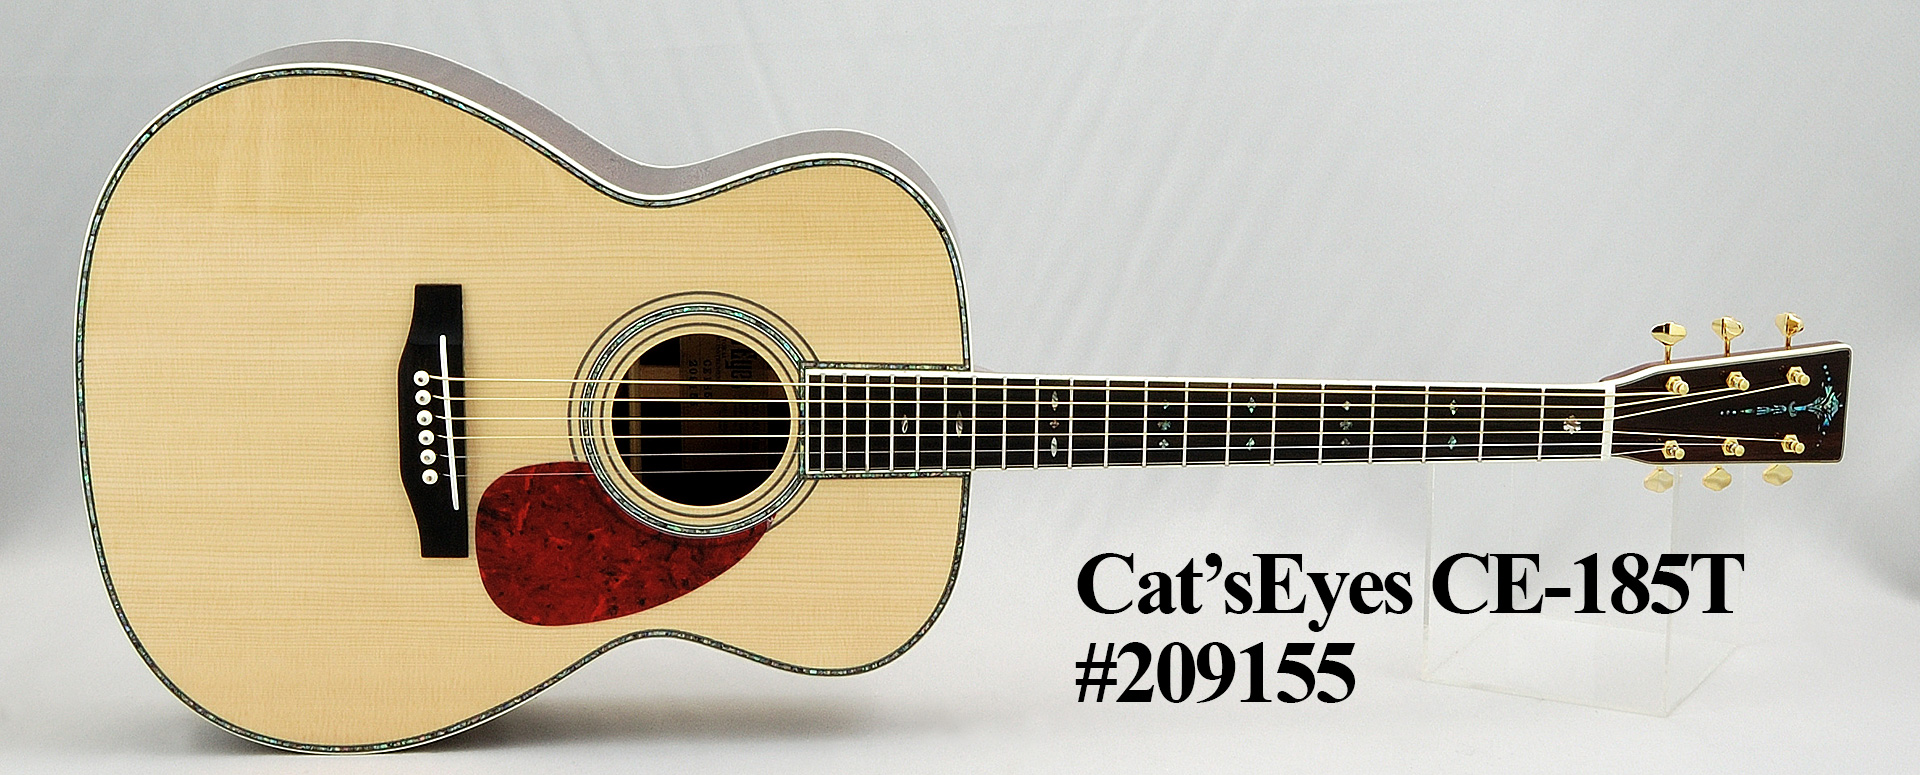 Cat'sEyes/CE185T 【しっかりしたボディ鳴りと厚みのあるサウンド 